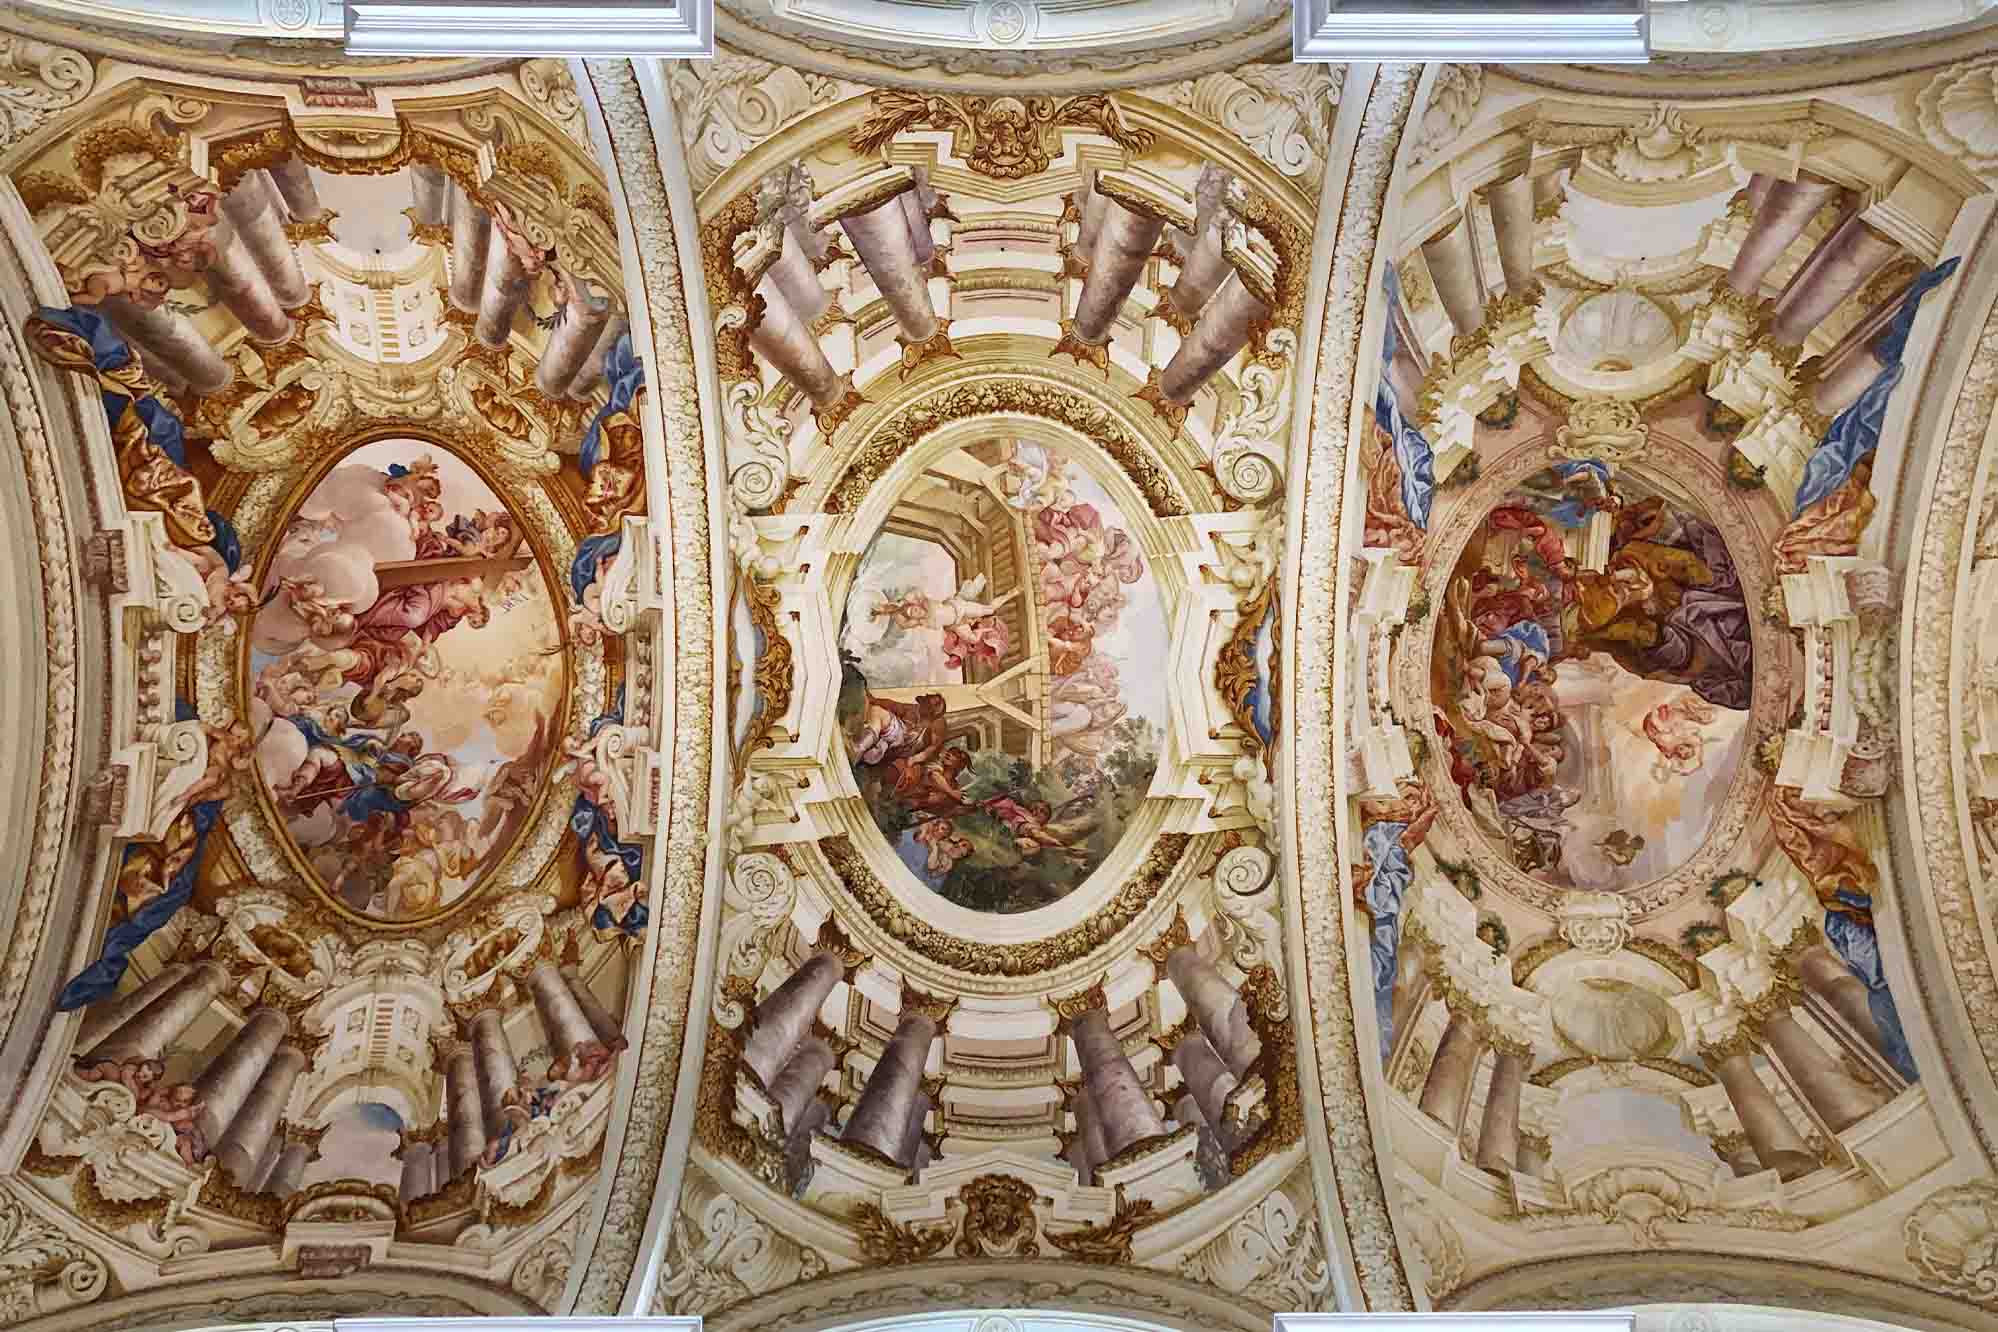 Các bức bích họa trên trần nhà ở gian giữa của Vương cung Thánh đường Thánh Florian. (Ảnh: fivetonine/Shutterstock)